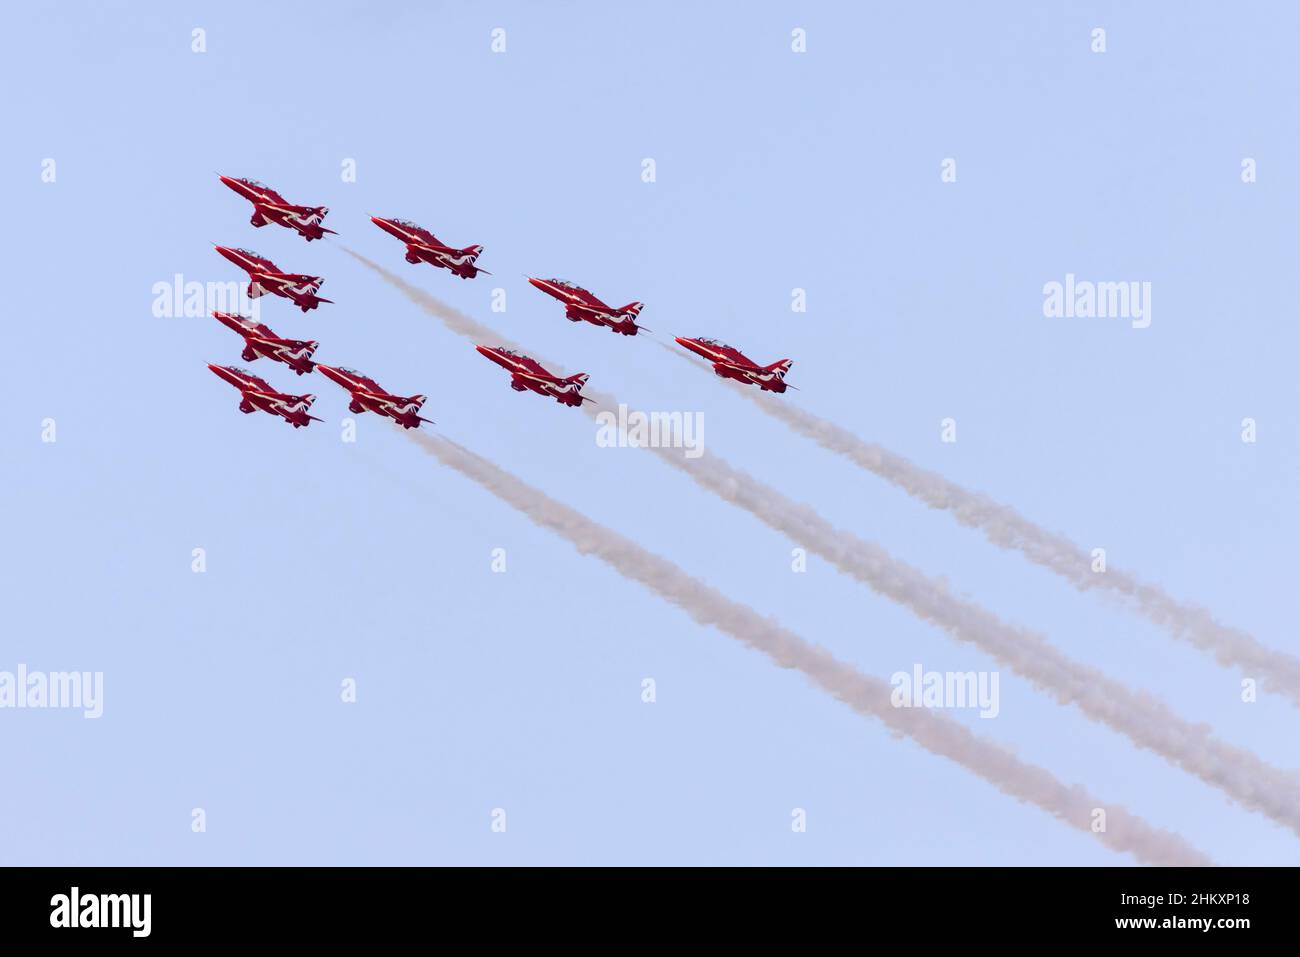 Royal Air Force British Aerospace Hawk T1A de l'équipe d'exposition les flèches rouges se présentent au-dessus de la mer. Banque D'Images